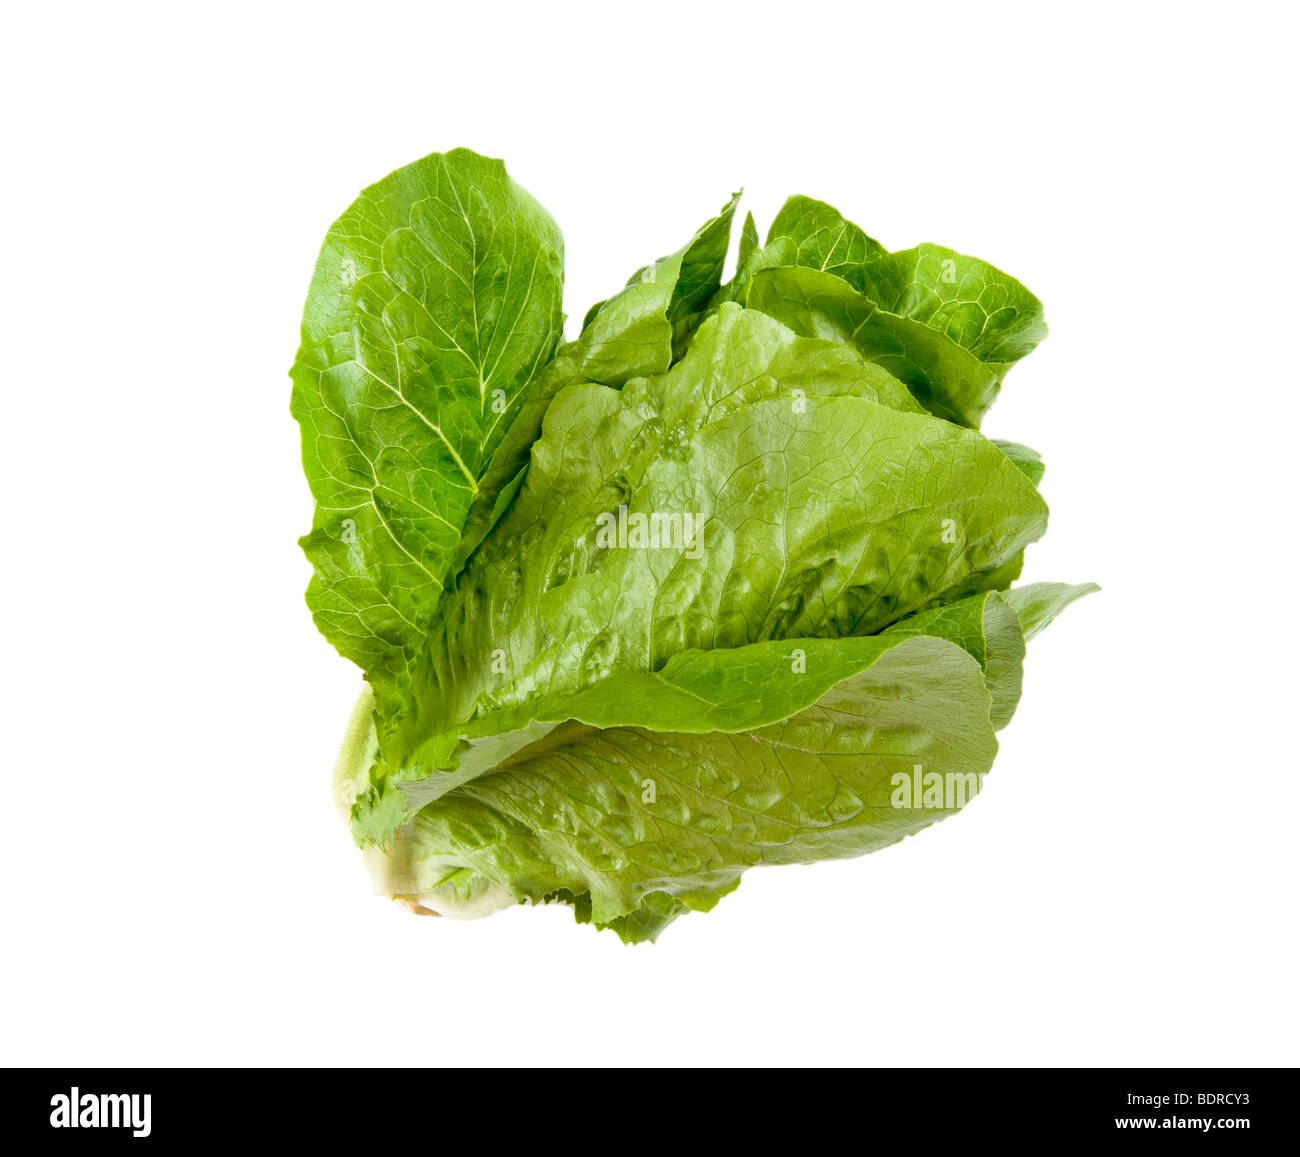 Salat insalata verde romana greenfood cibo mediterraneo lascia leaf italia italien italiana fitness fit FOOD sulla lattuga backgr bianco Foto Stock